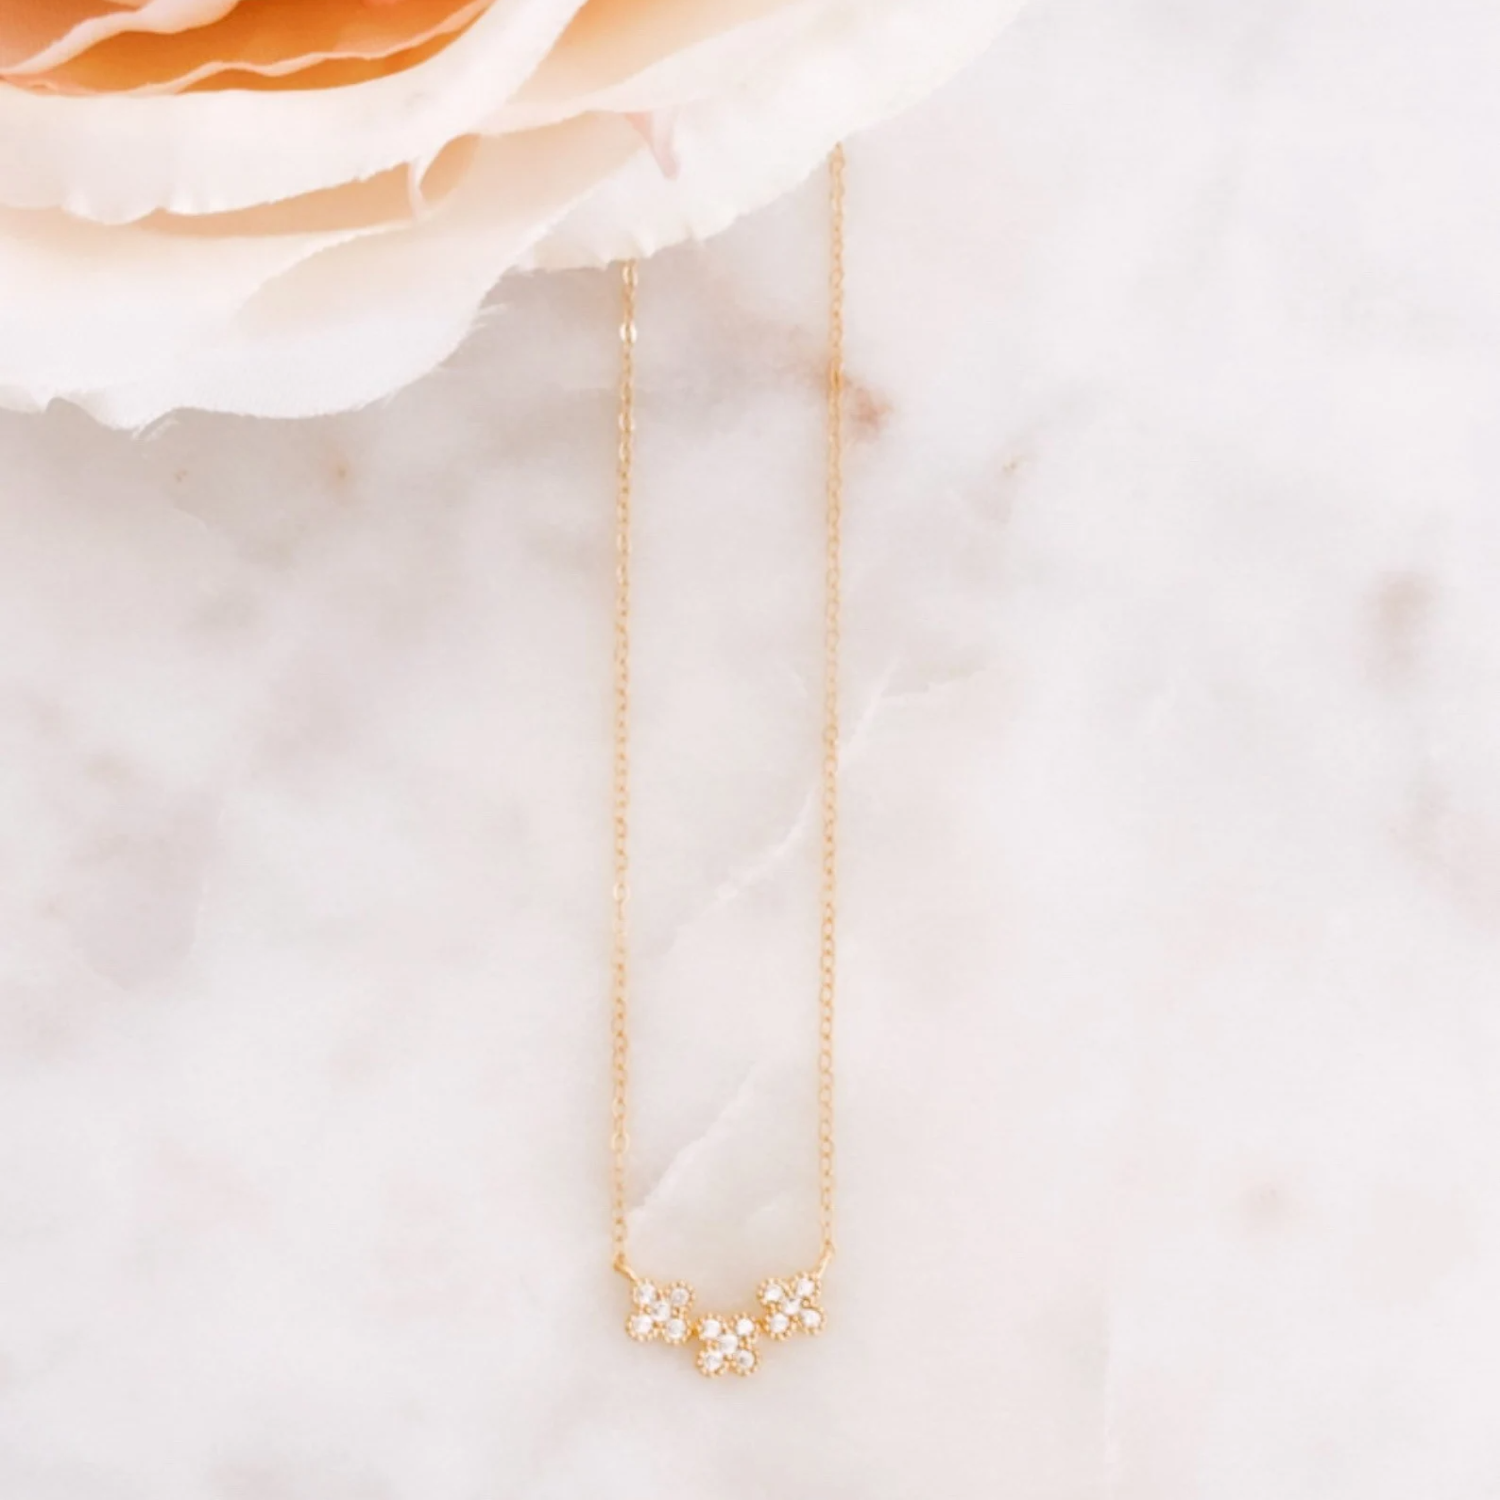 3 Diamond Flower Simple Minimalist Necklace 24kdiamond